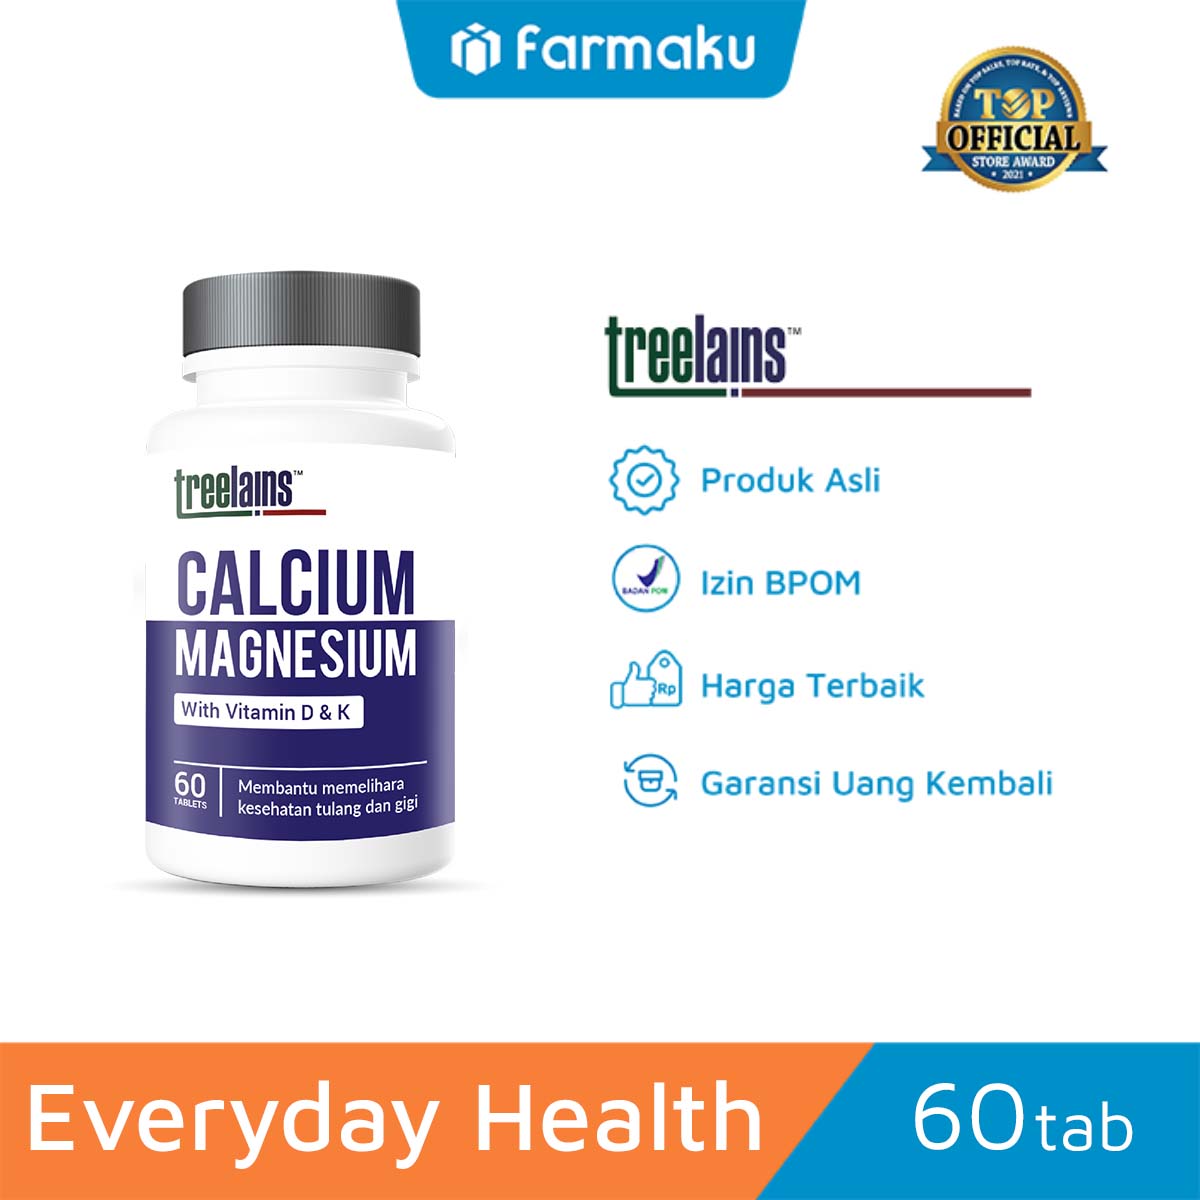 Treelains Calcium Magnesium with Vitamin D & K